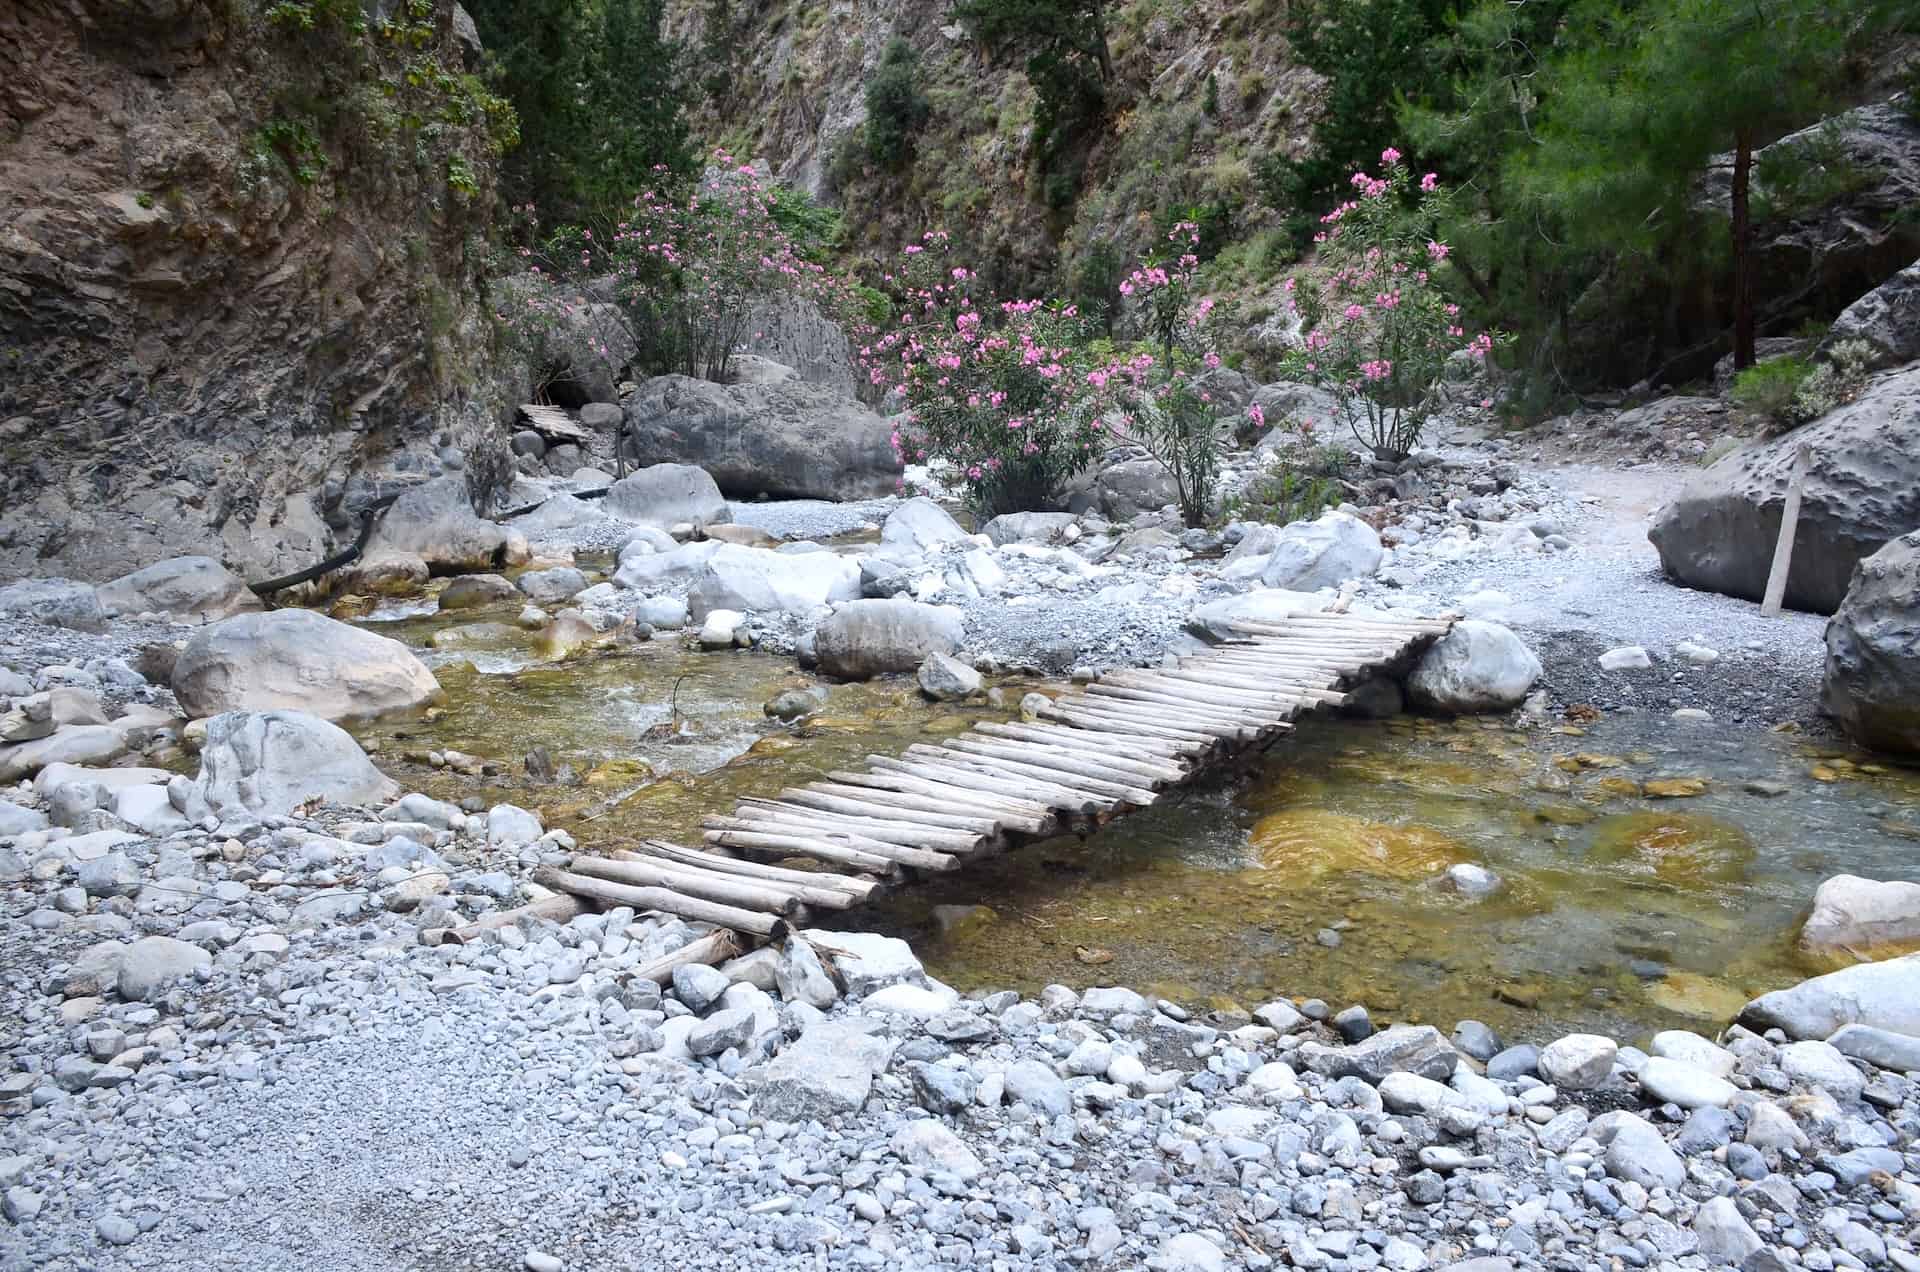 Another bridge on the trail from Nero tis Perdikas to Christos at the Samaria Gorge in Crete, Greece